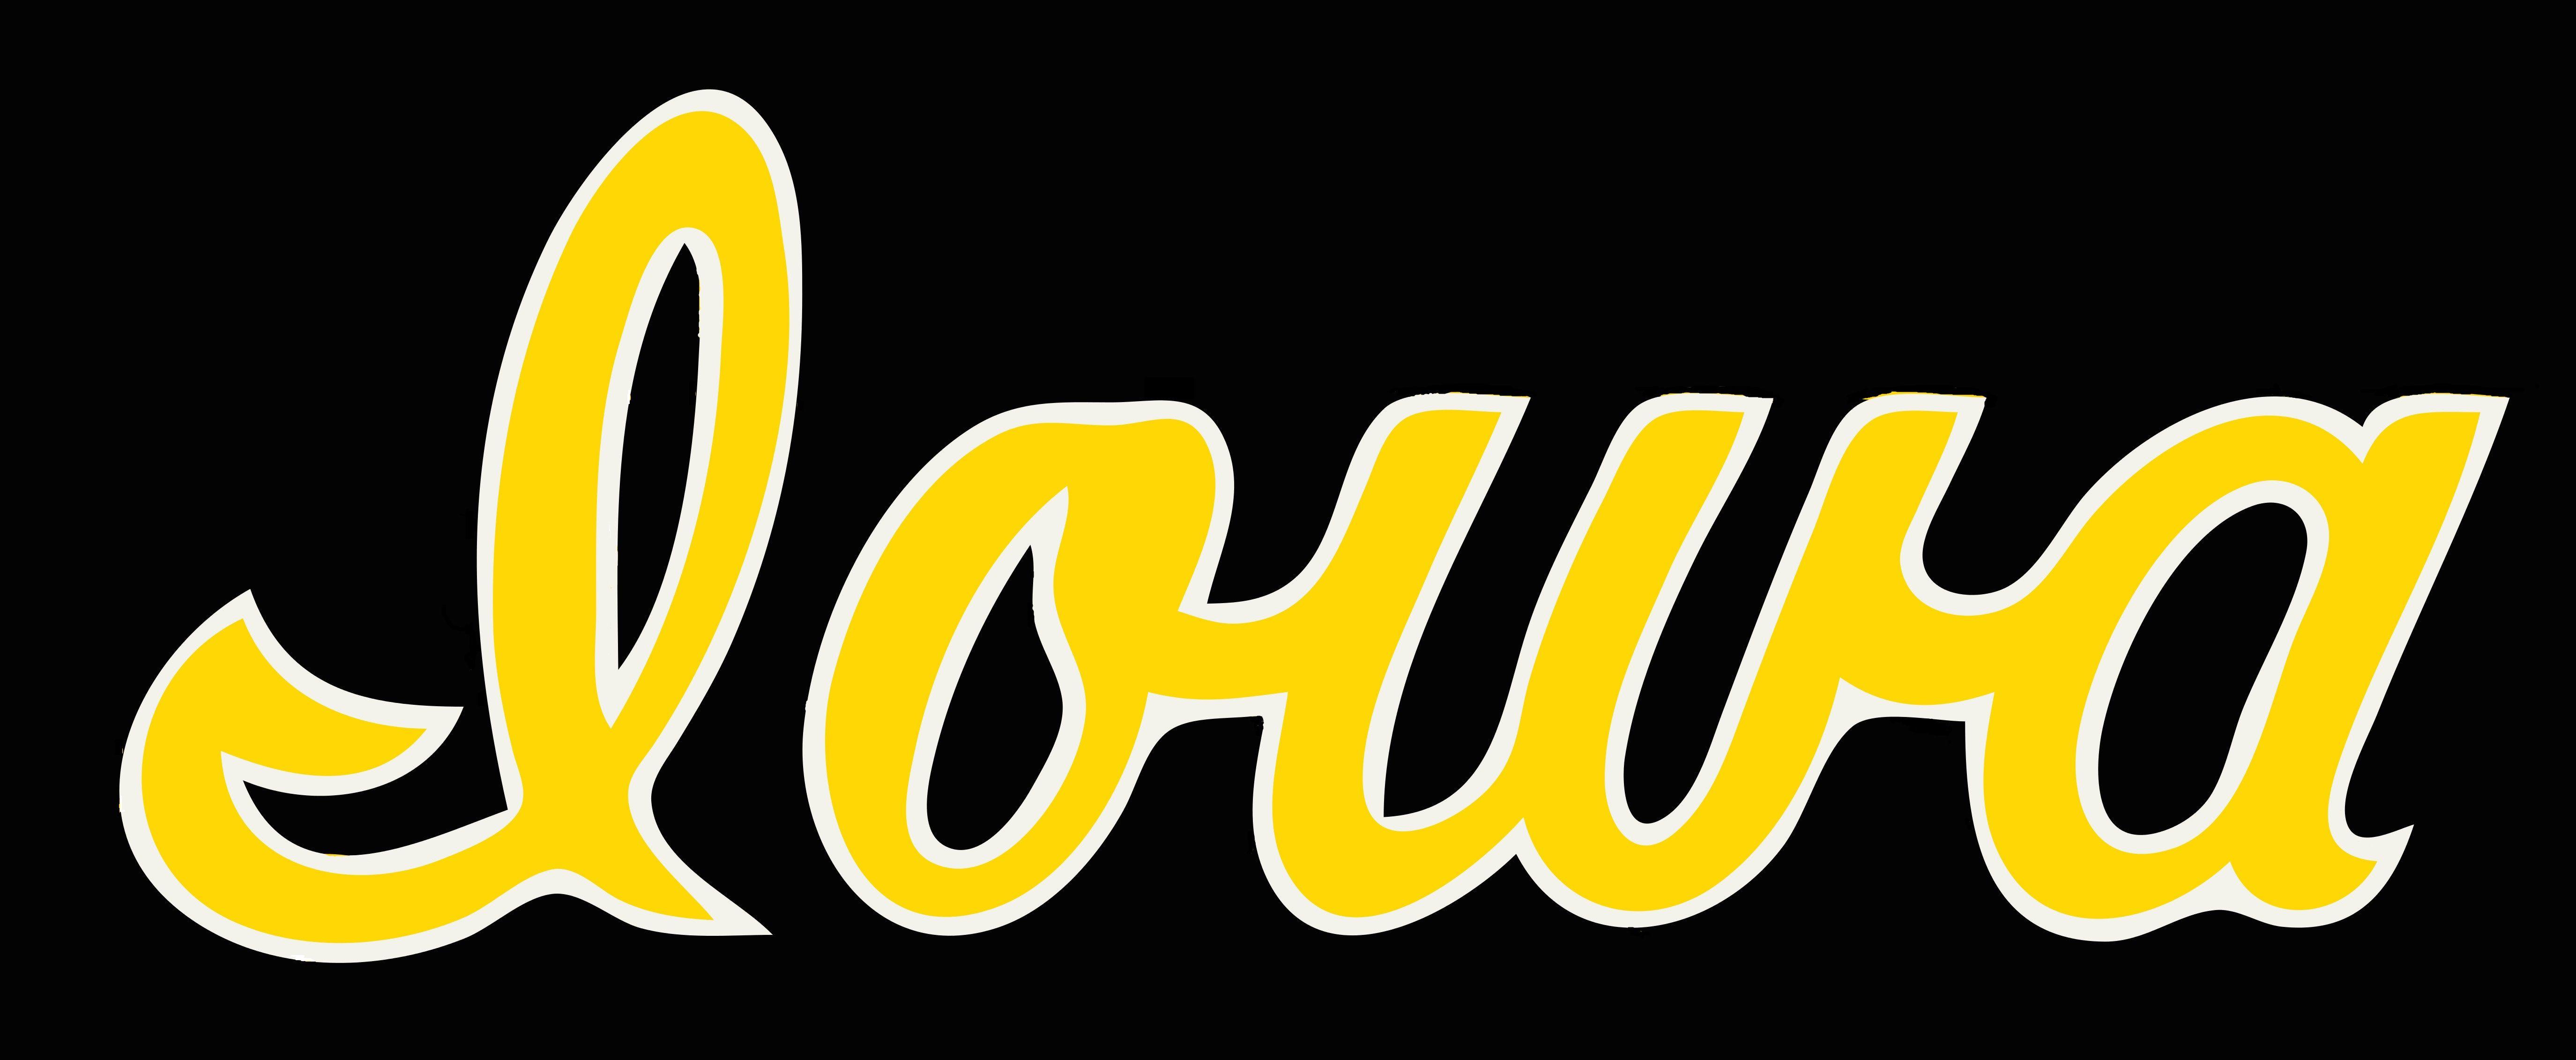 Iwoa Logo - iowa script logo